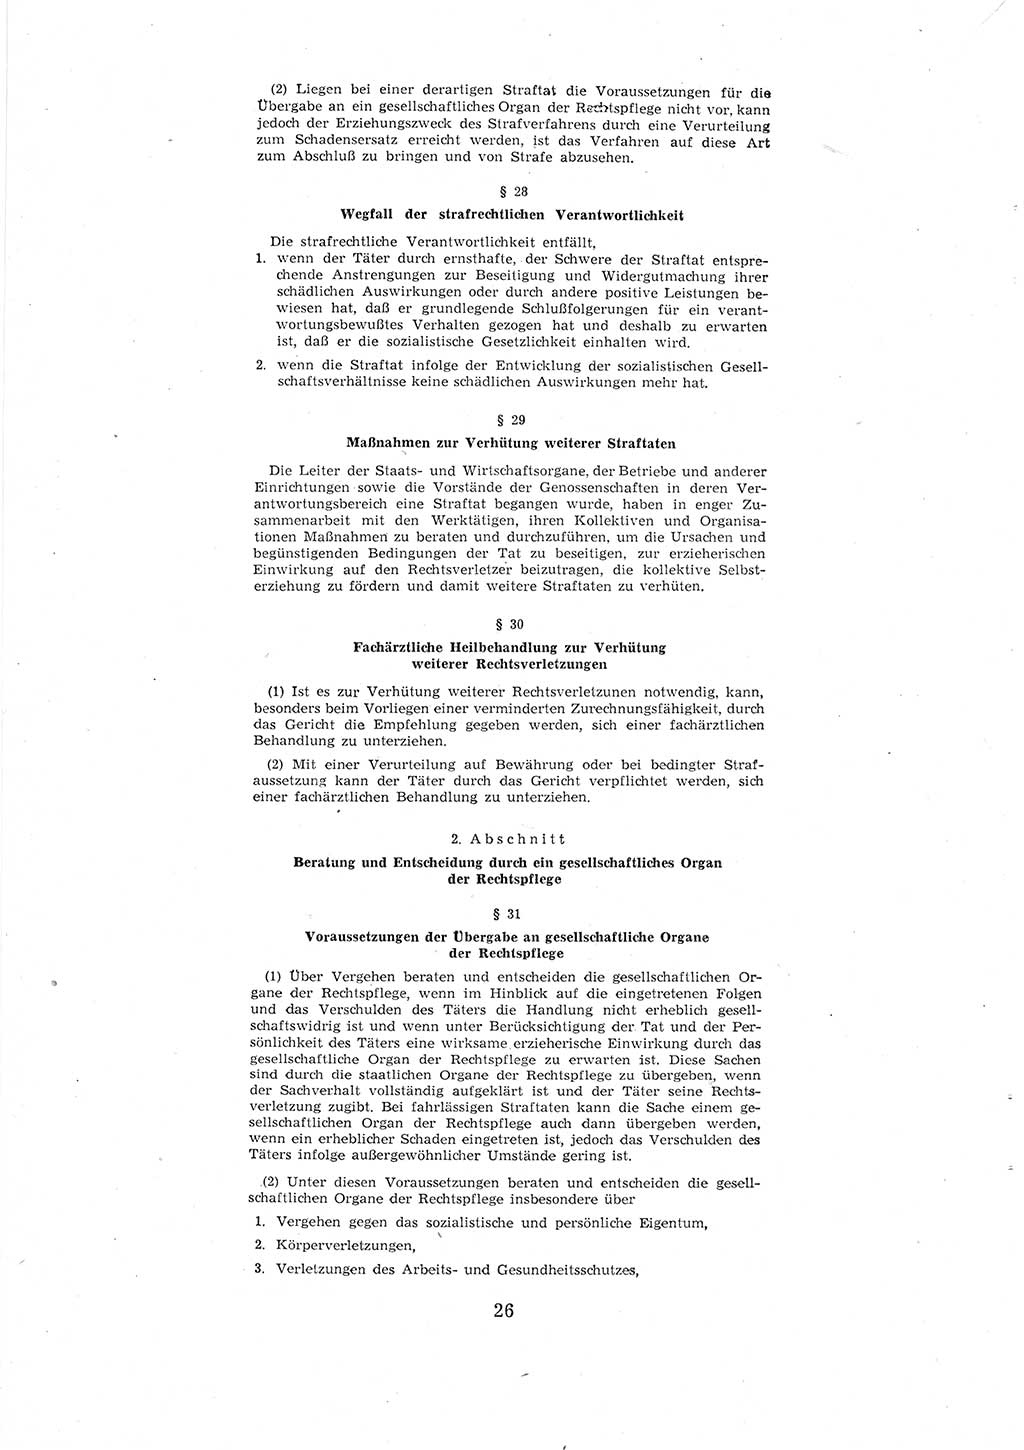 Entwurf des Strafgesetzbuches (StGB) der Deutschen Demokratischen Republik (DDR) 1967, Seite 26 (Entw. StGB DDR 1967, S. 26)